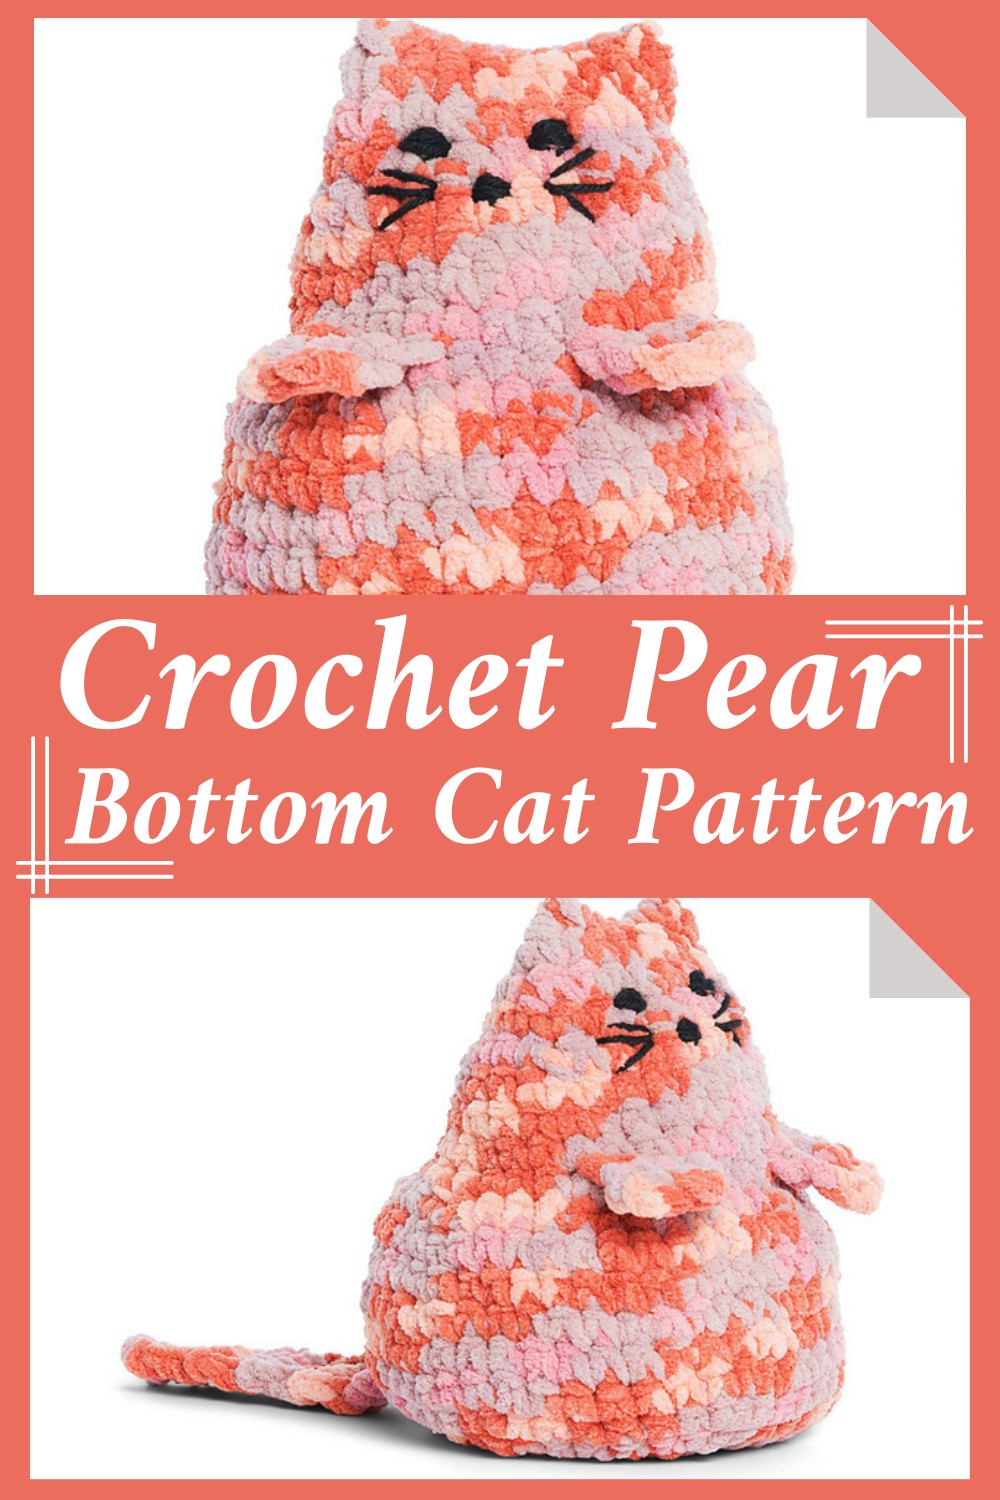 Crochet Pear Bottom Cat Pattern